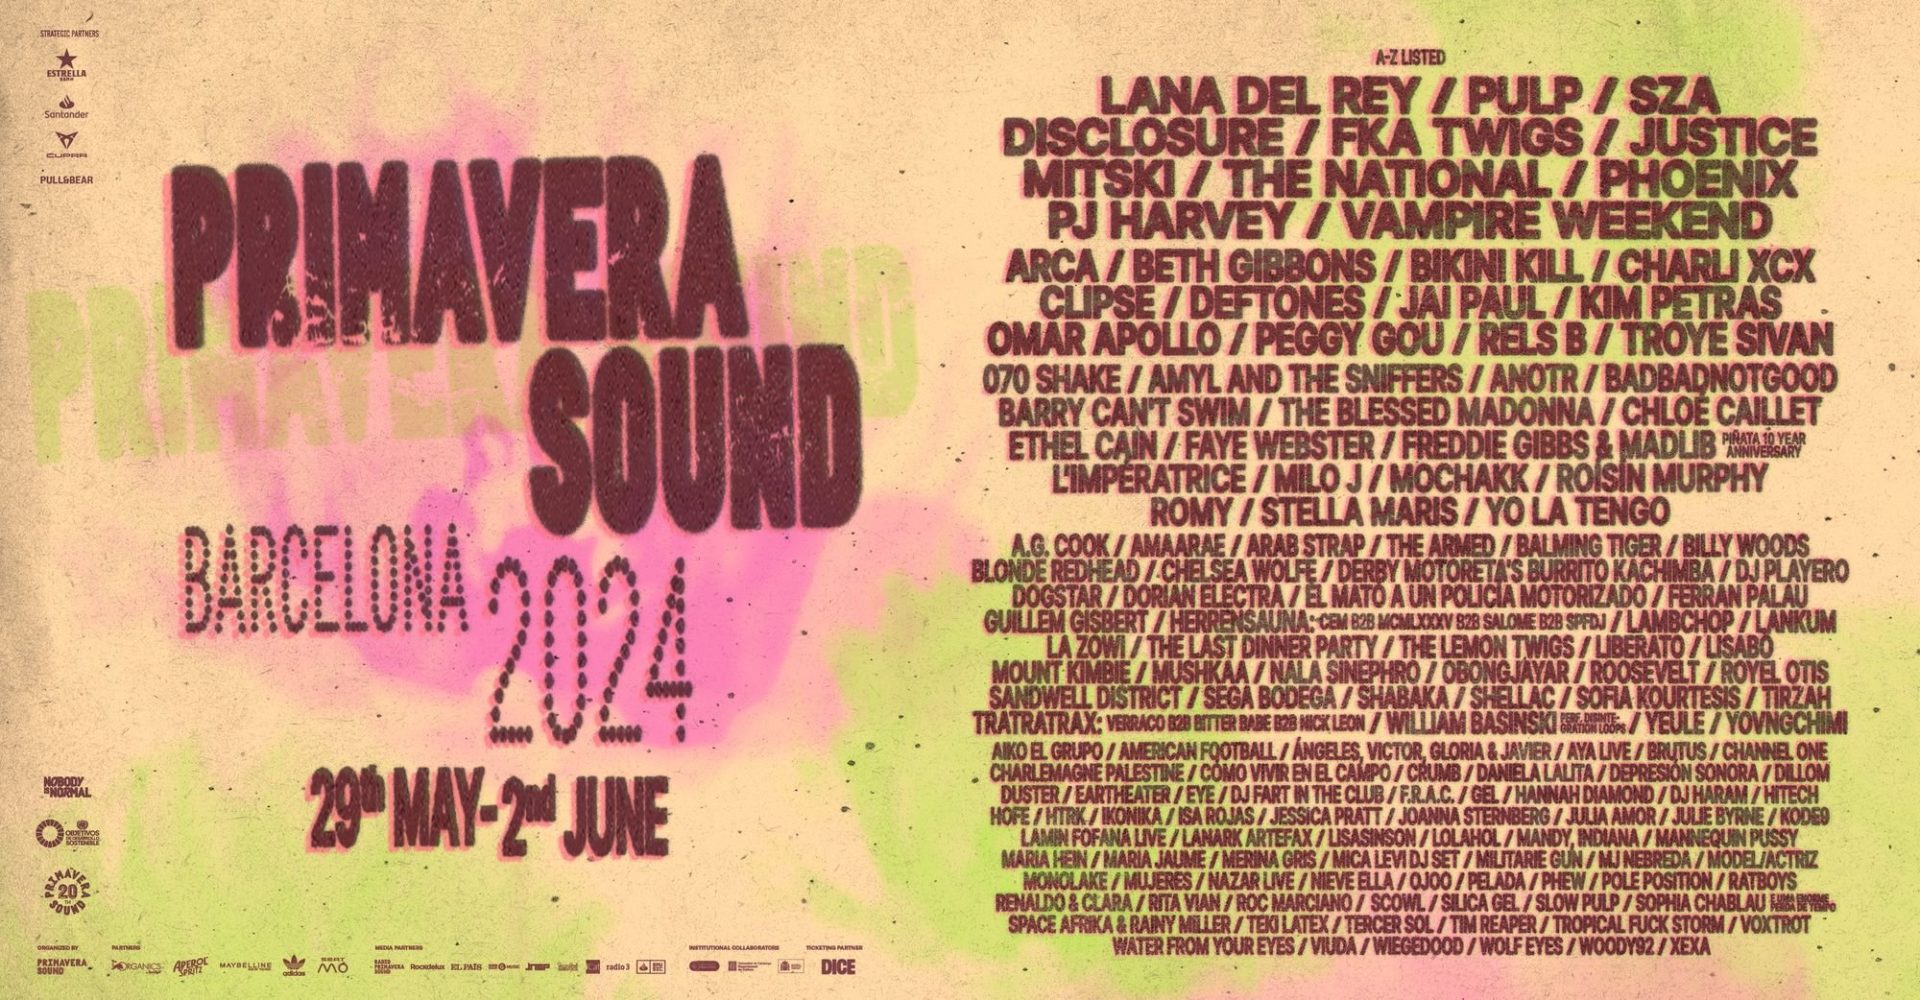 Festivales Lana del Rey, Pulp y SZA encabezan el Primavera Sound